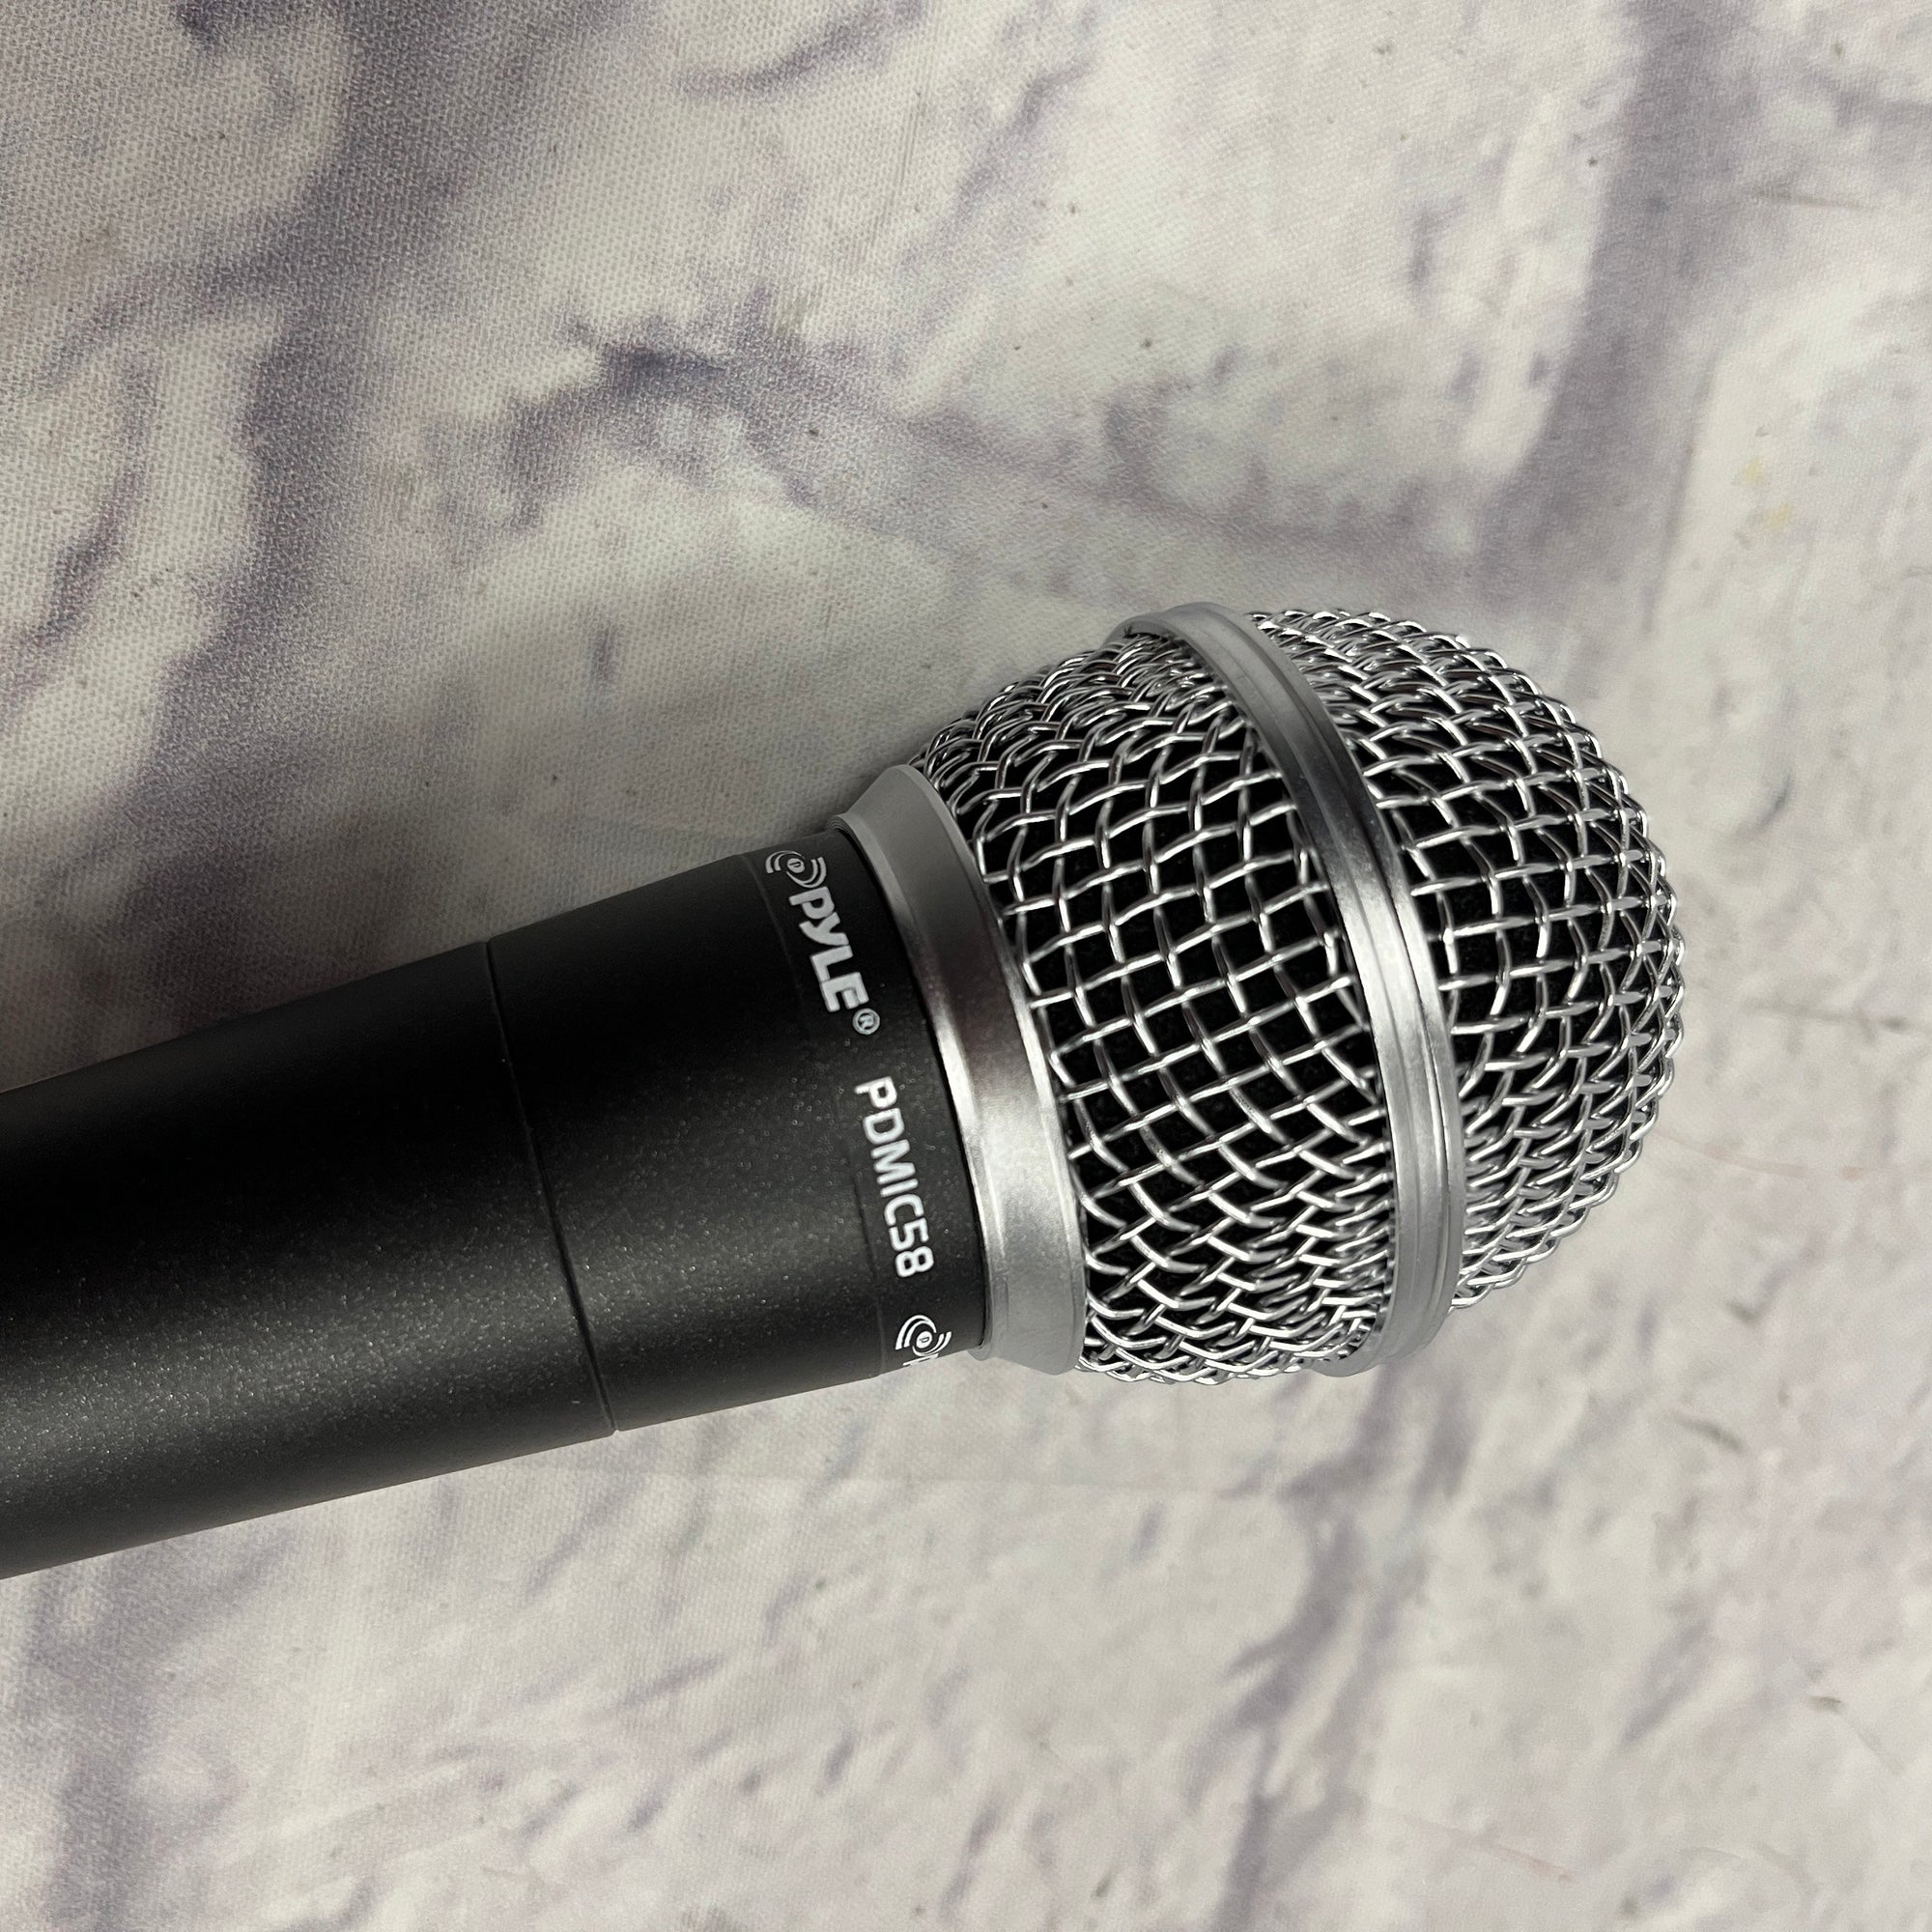 Pyle Microphone Professionnel Dynamique Micro